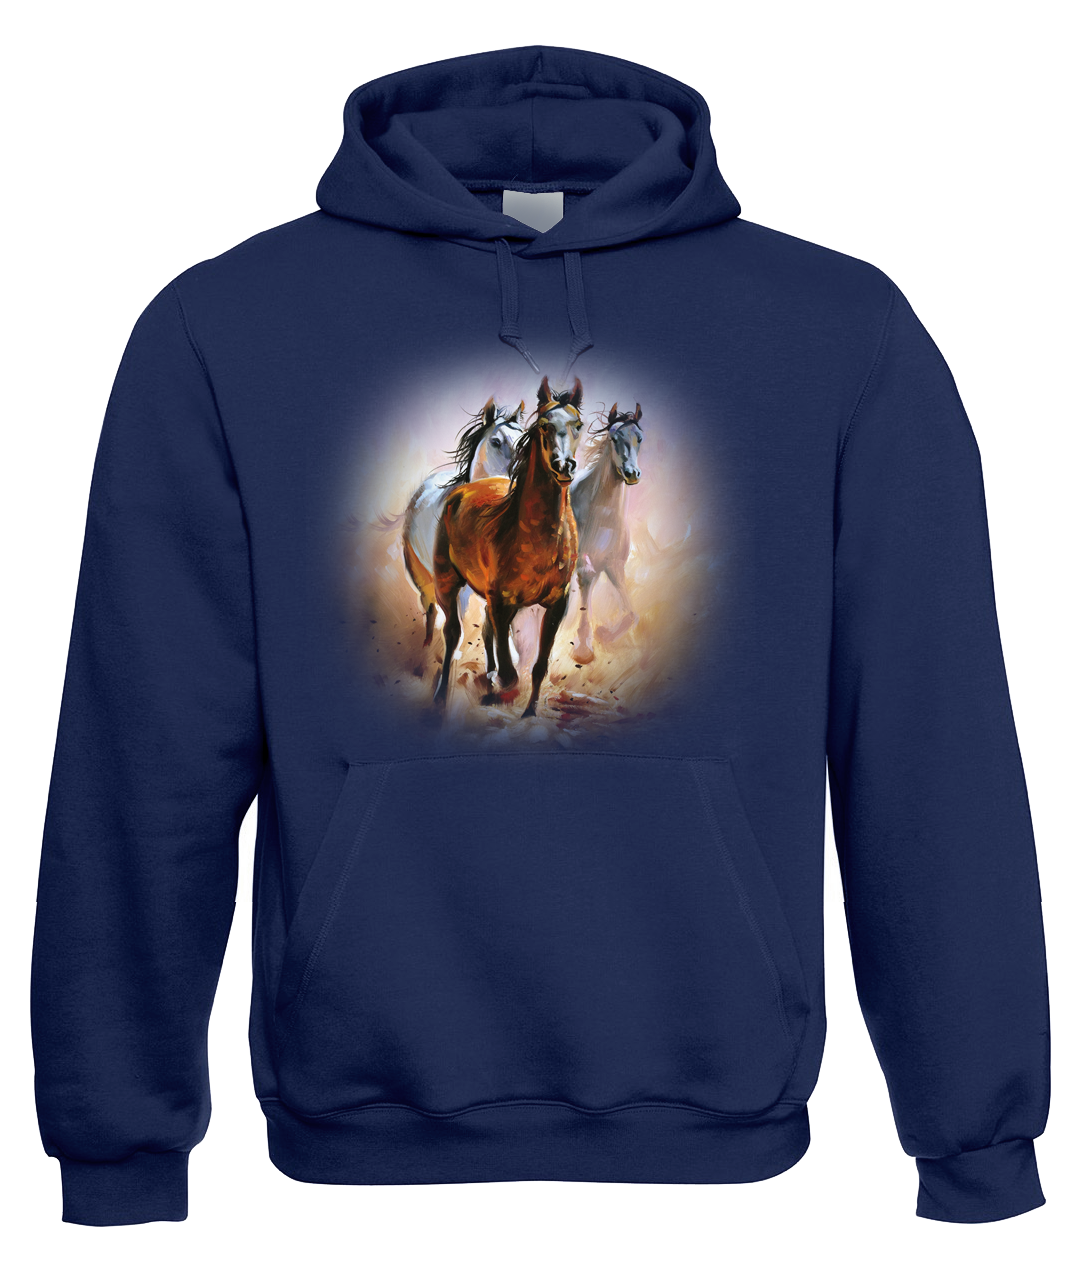 Mikina s koněm - Malované koně Velikost: XL, Barva: Tmavě modrá